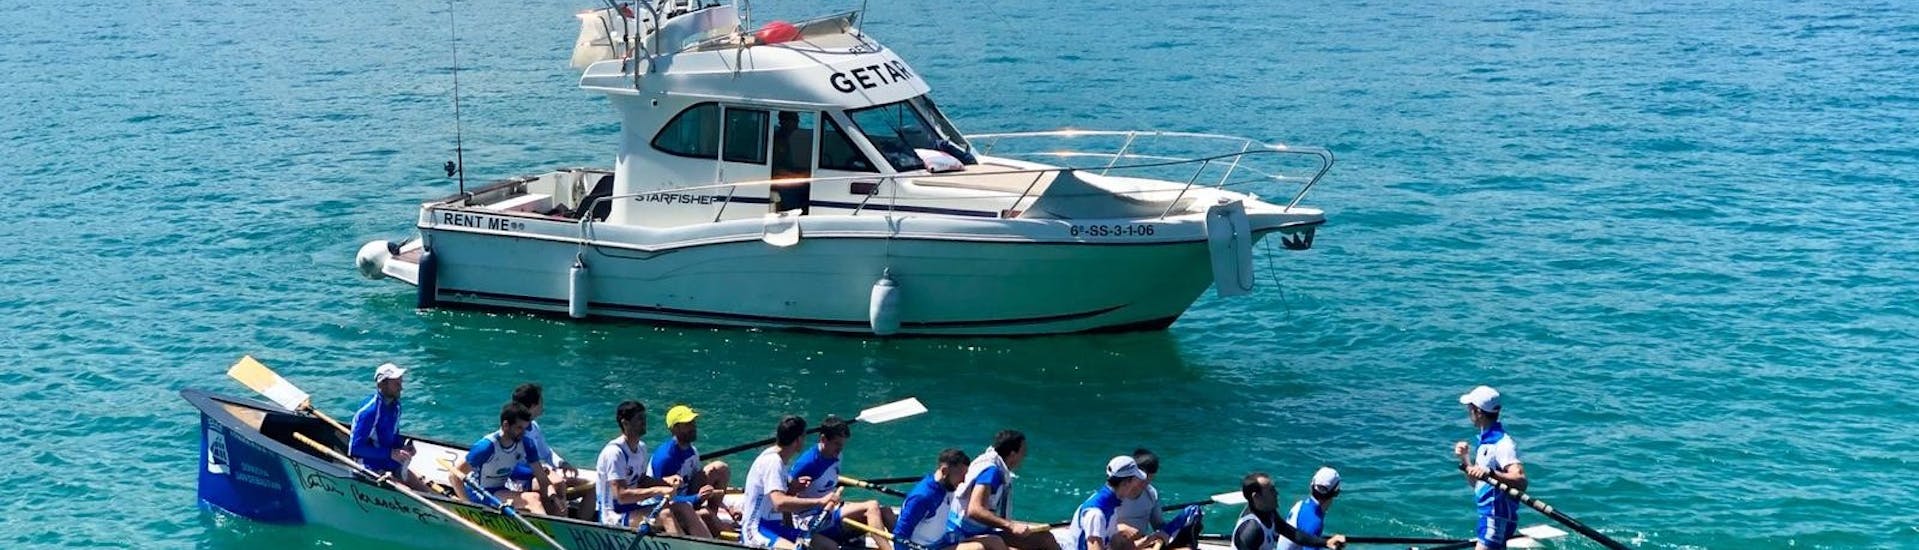 Menschen kajaken neben dem Boot während der Halbprivate Yacht-Tour zu den Klippen von San Sebastian mit Getari Charter San Sebastián.